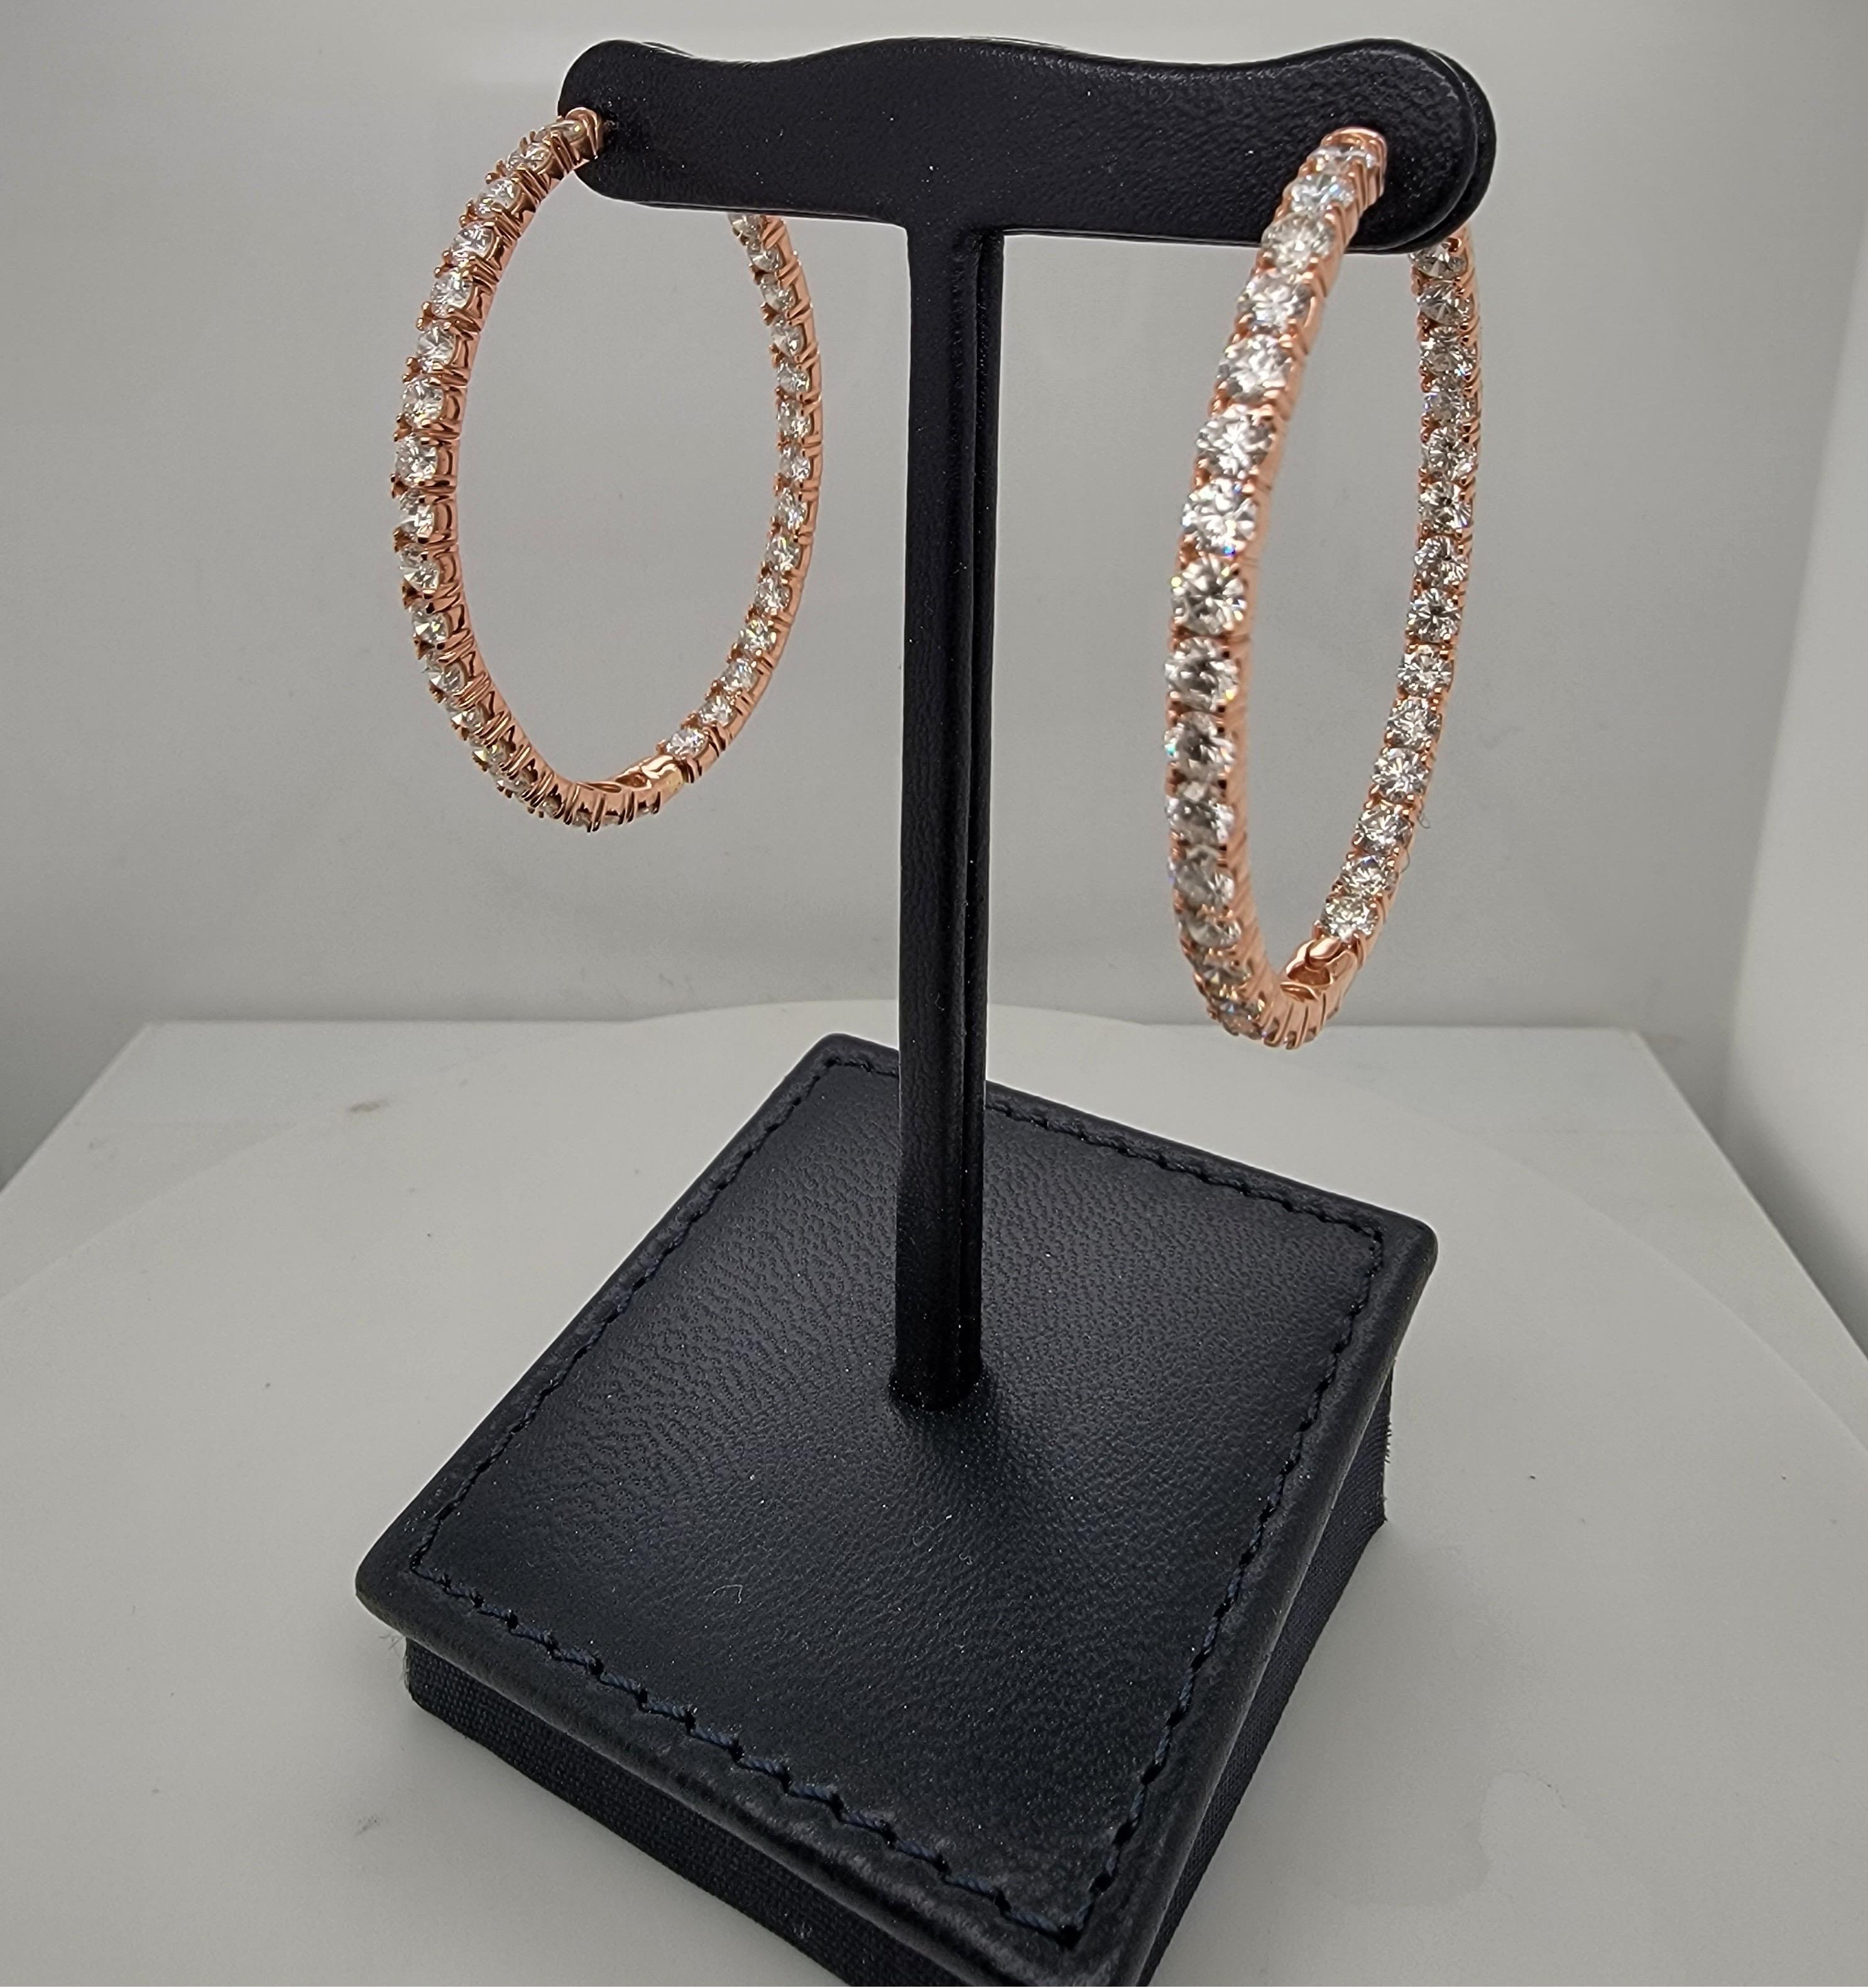 Ovale Creolen aus Roségold und Diamanten sind ein echter Hingucker. 

Diese wunderschönen Ohrringe sind mit 7,80 Karat ideal geschliffenen (für maximale Brillanz) und farblosen (d-e-f) Diamanten in Roségold besetzt. Diese einzigartigen ovalen